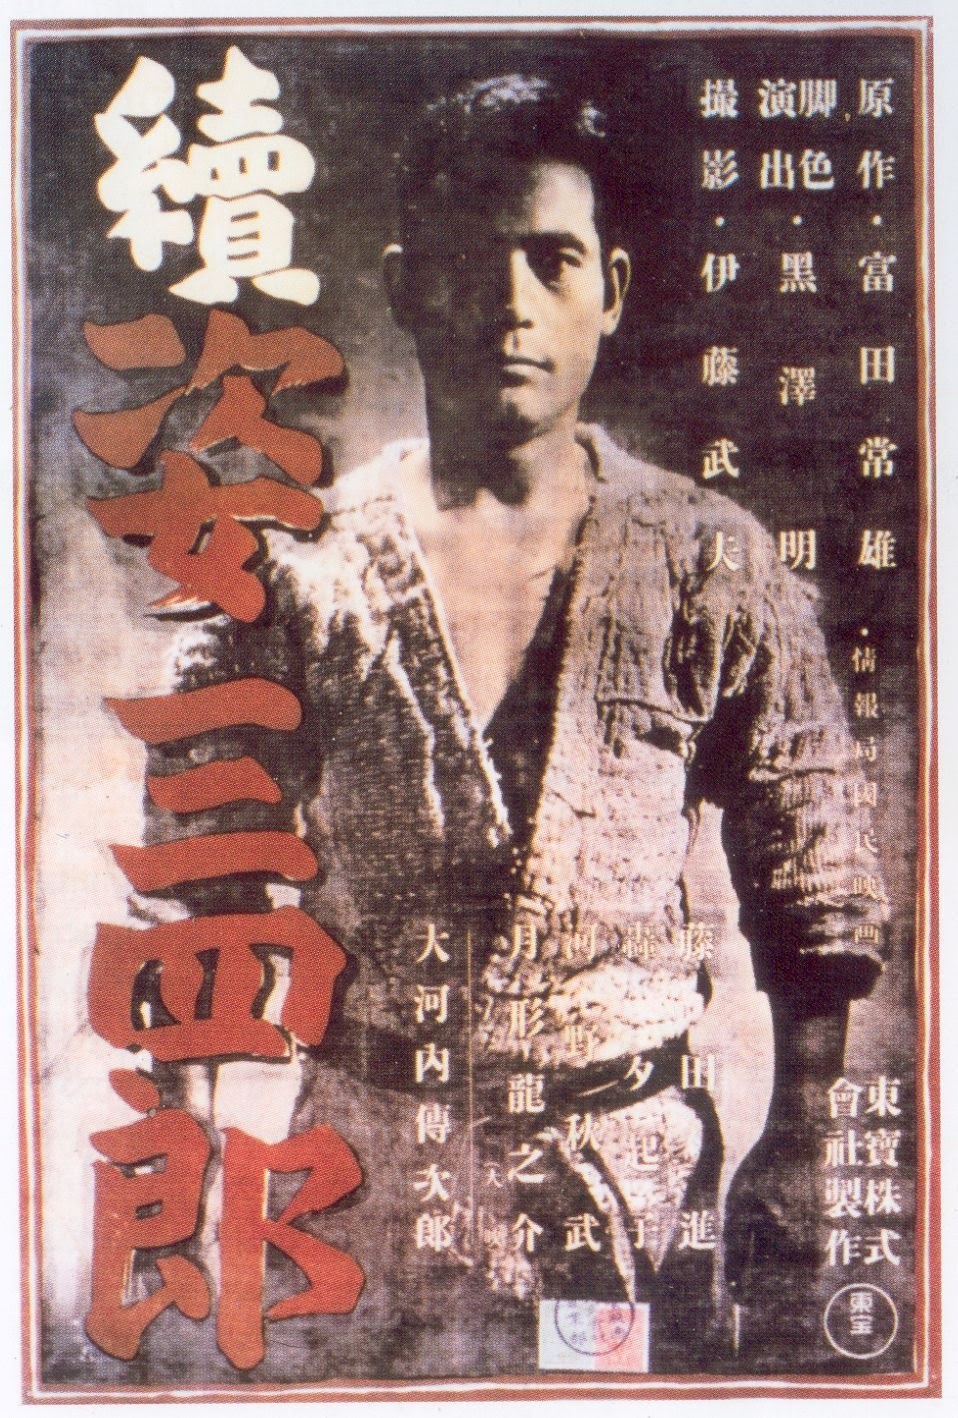 45 – A saga do judô (Sugata Sanshiro) – Japão (1943)